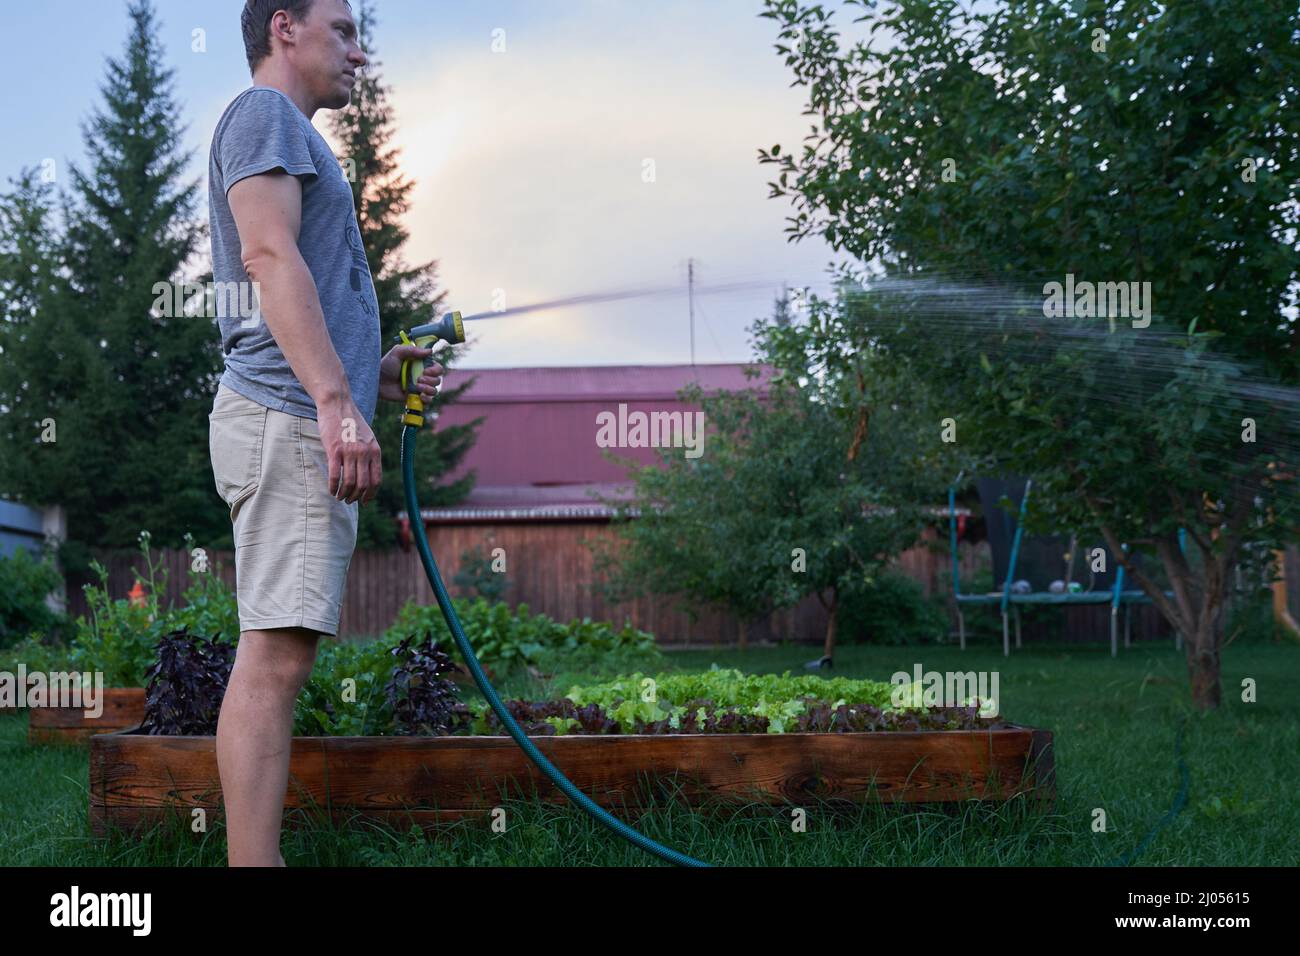 Wasserstrahlspritzen bei Tageslicht. Ein Mann baut im Garten Pflanzen im Freien an. Garten- und Hobbykonzept. Hochwertige Fotos Stockfoto